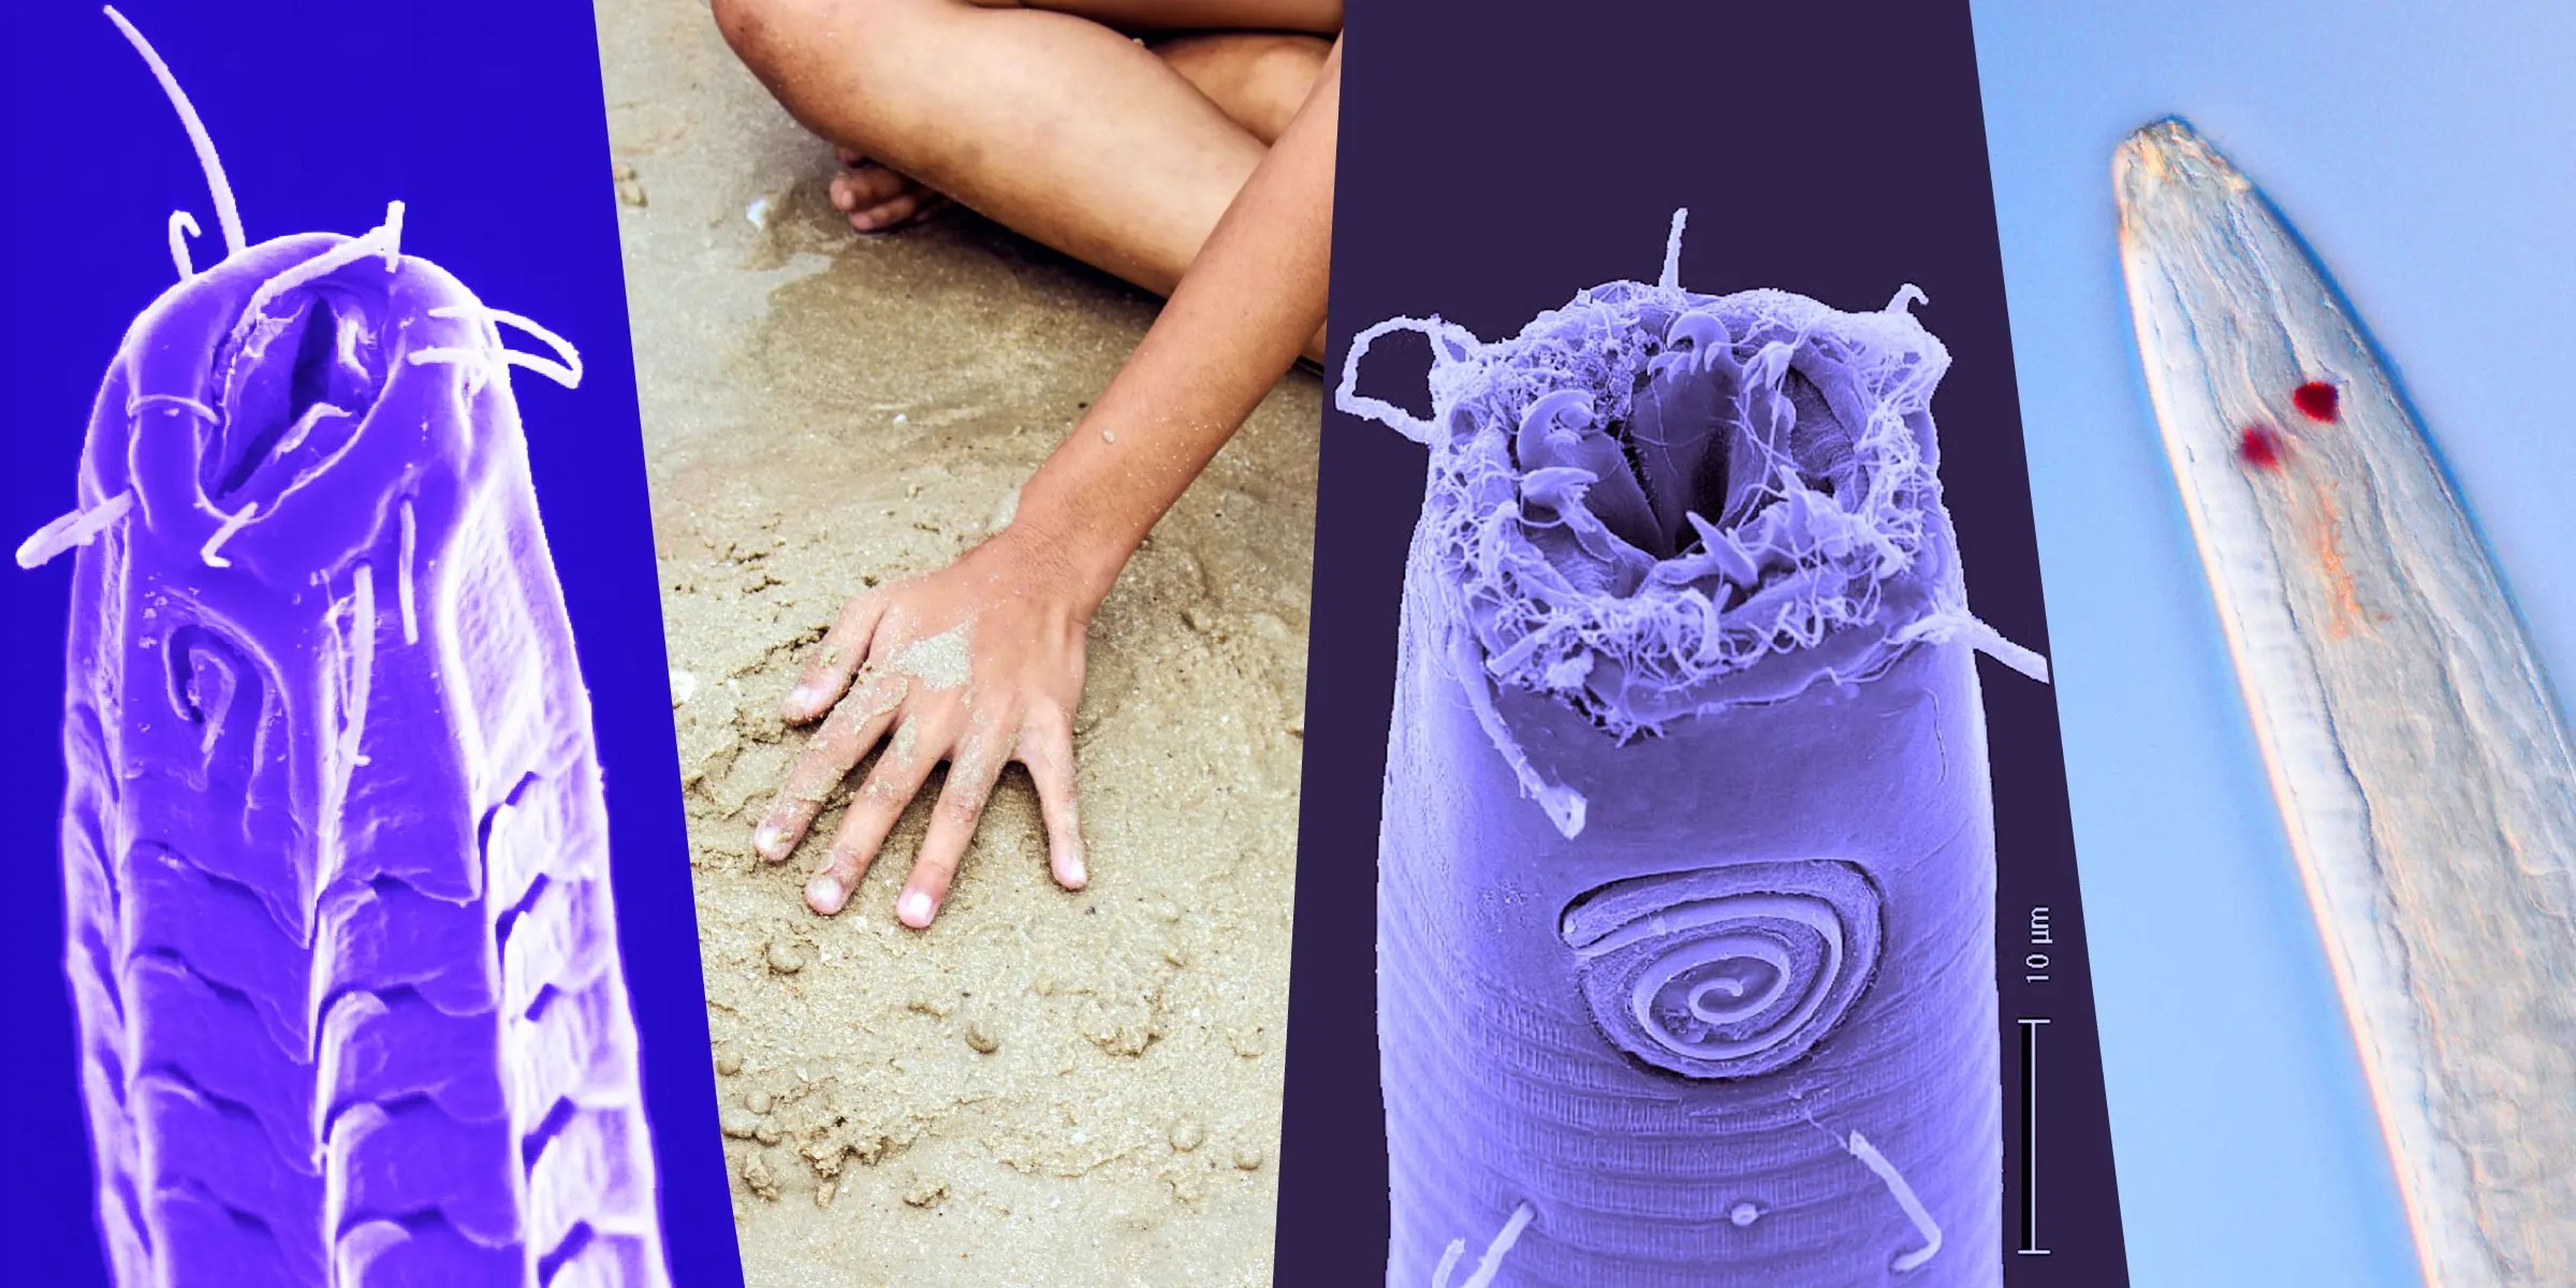 Miles de especies de nematodos viven entre la arena.